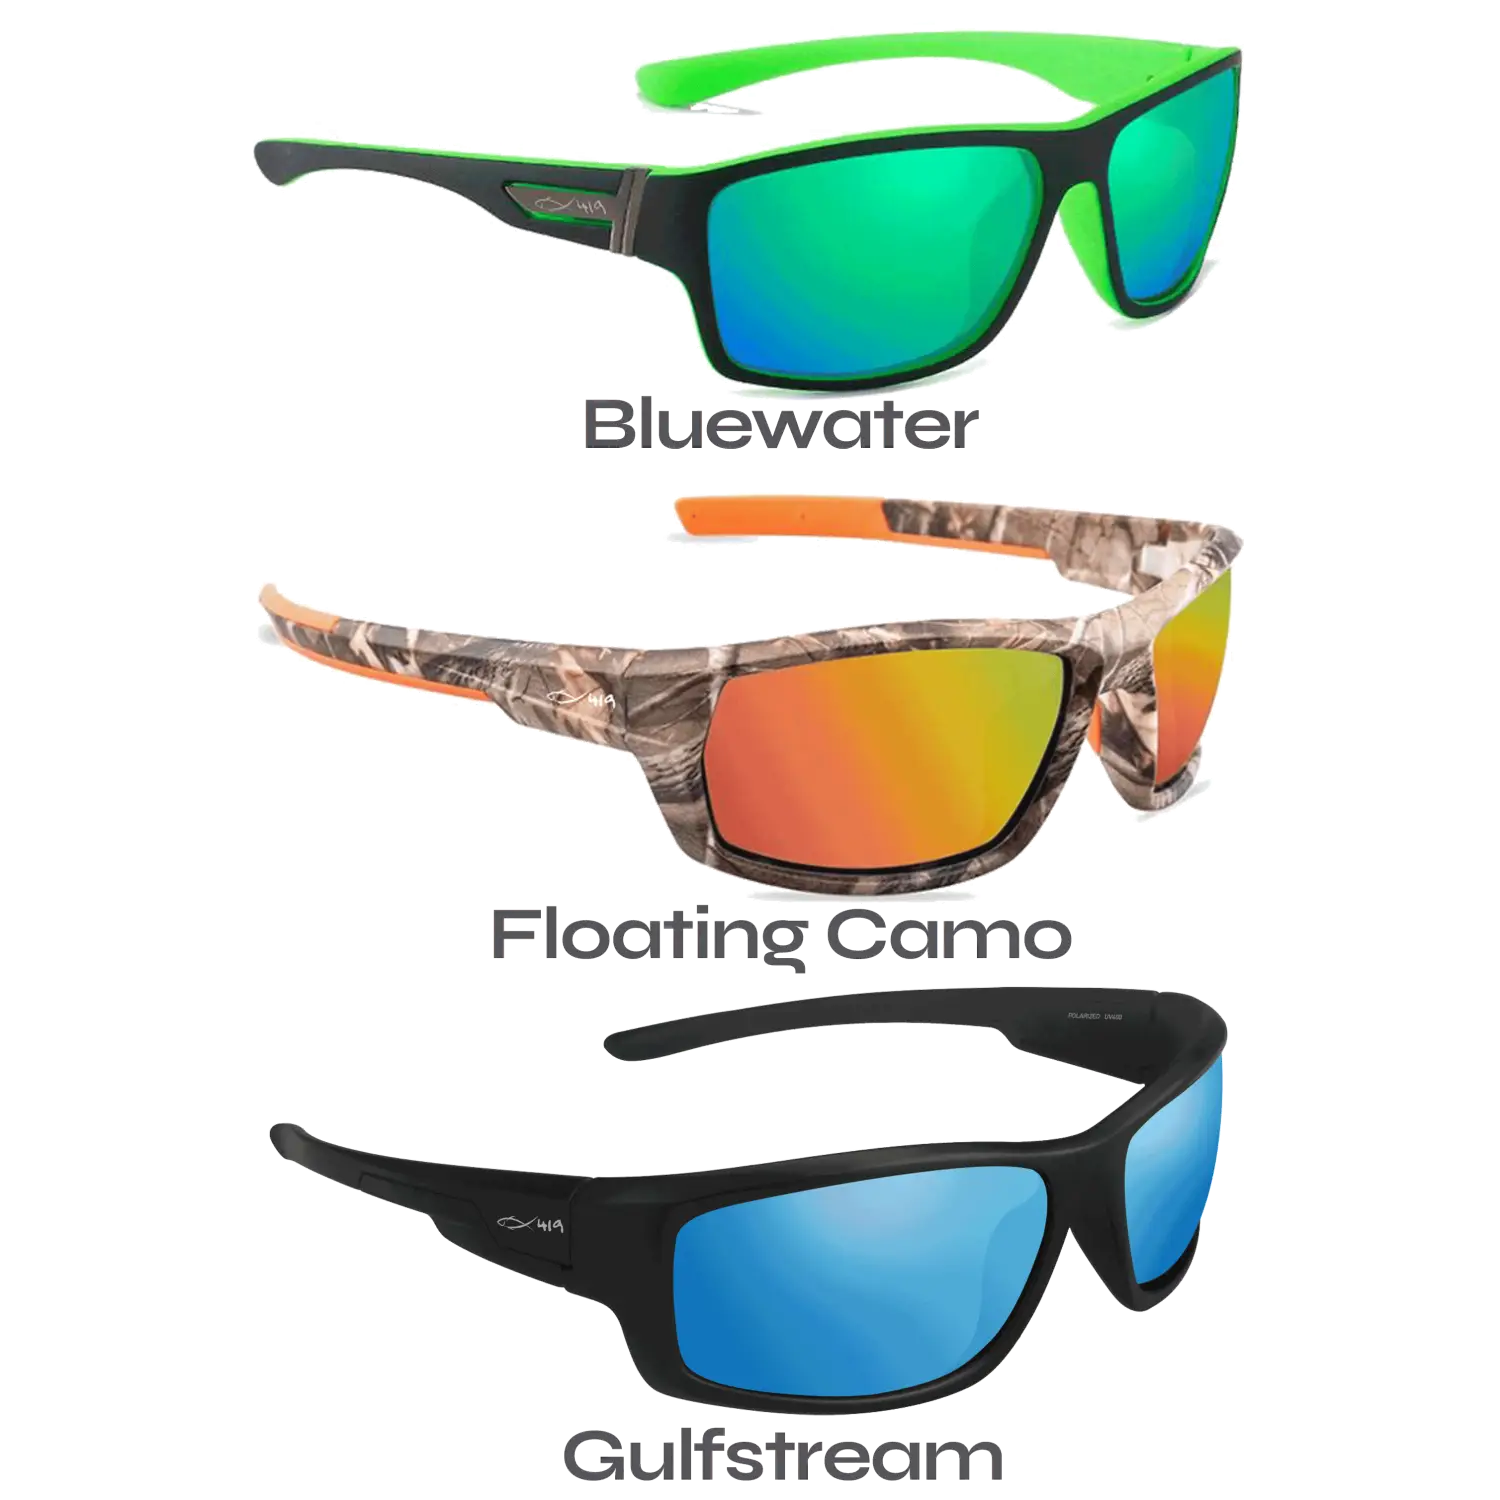 Why should I buy polarized sunglasses?